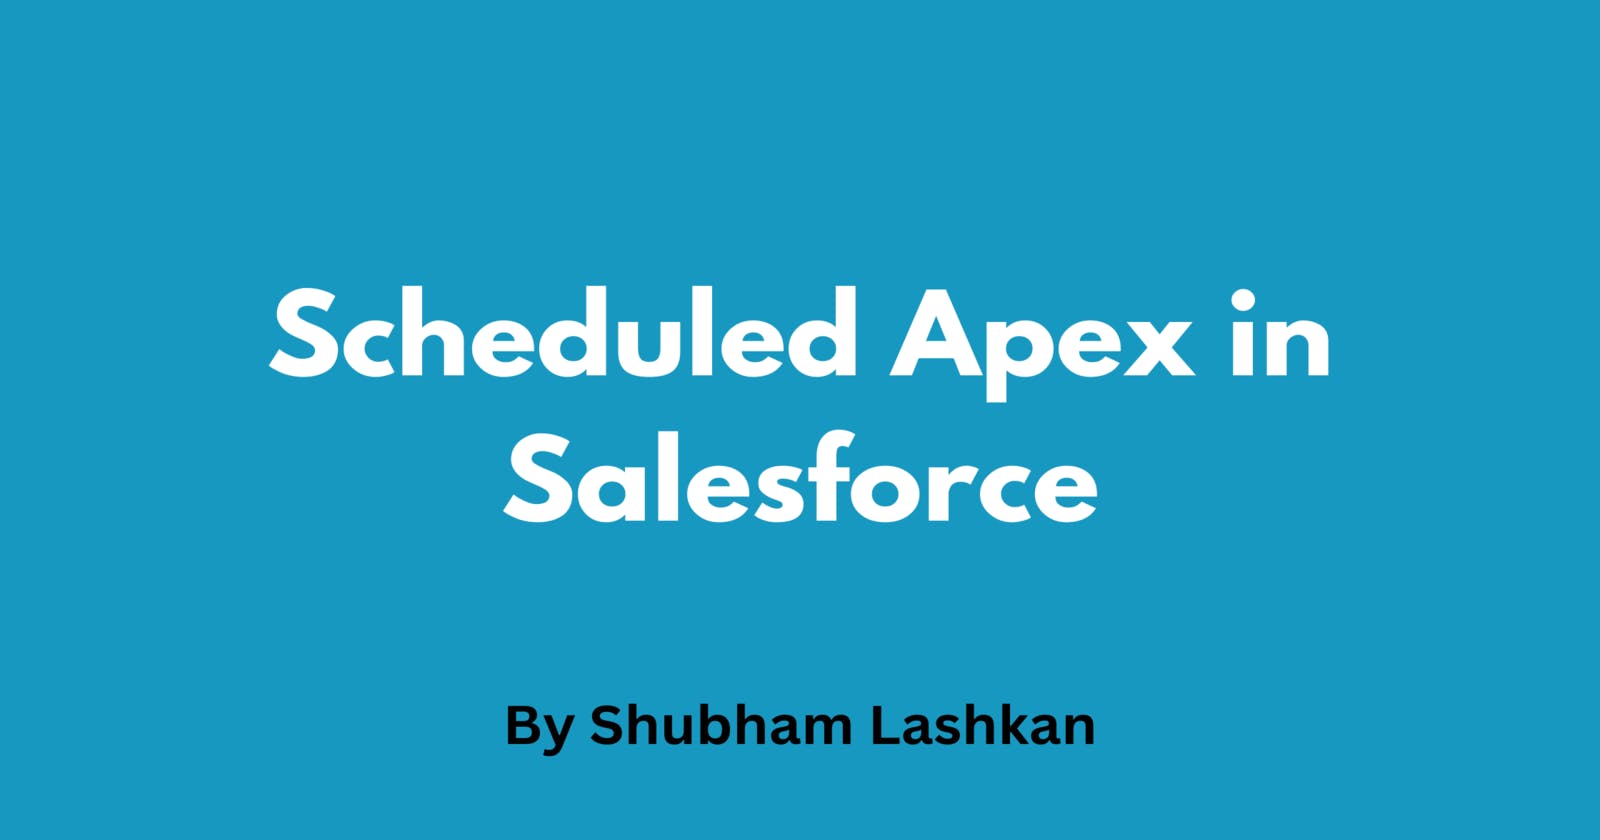 Scheduled Apex in Salesforce